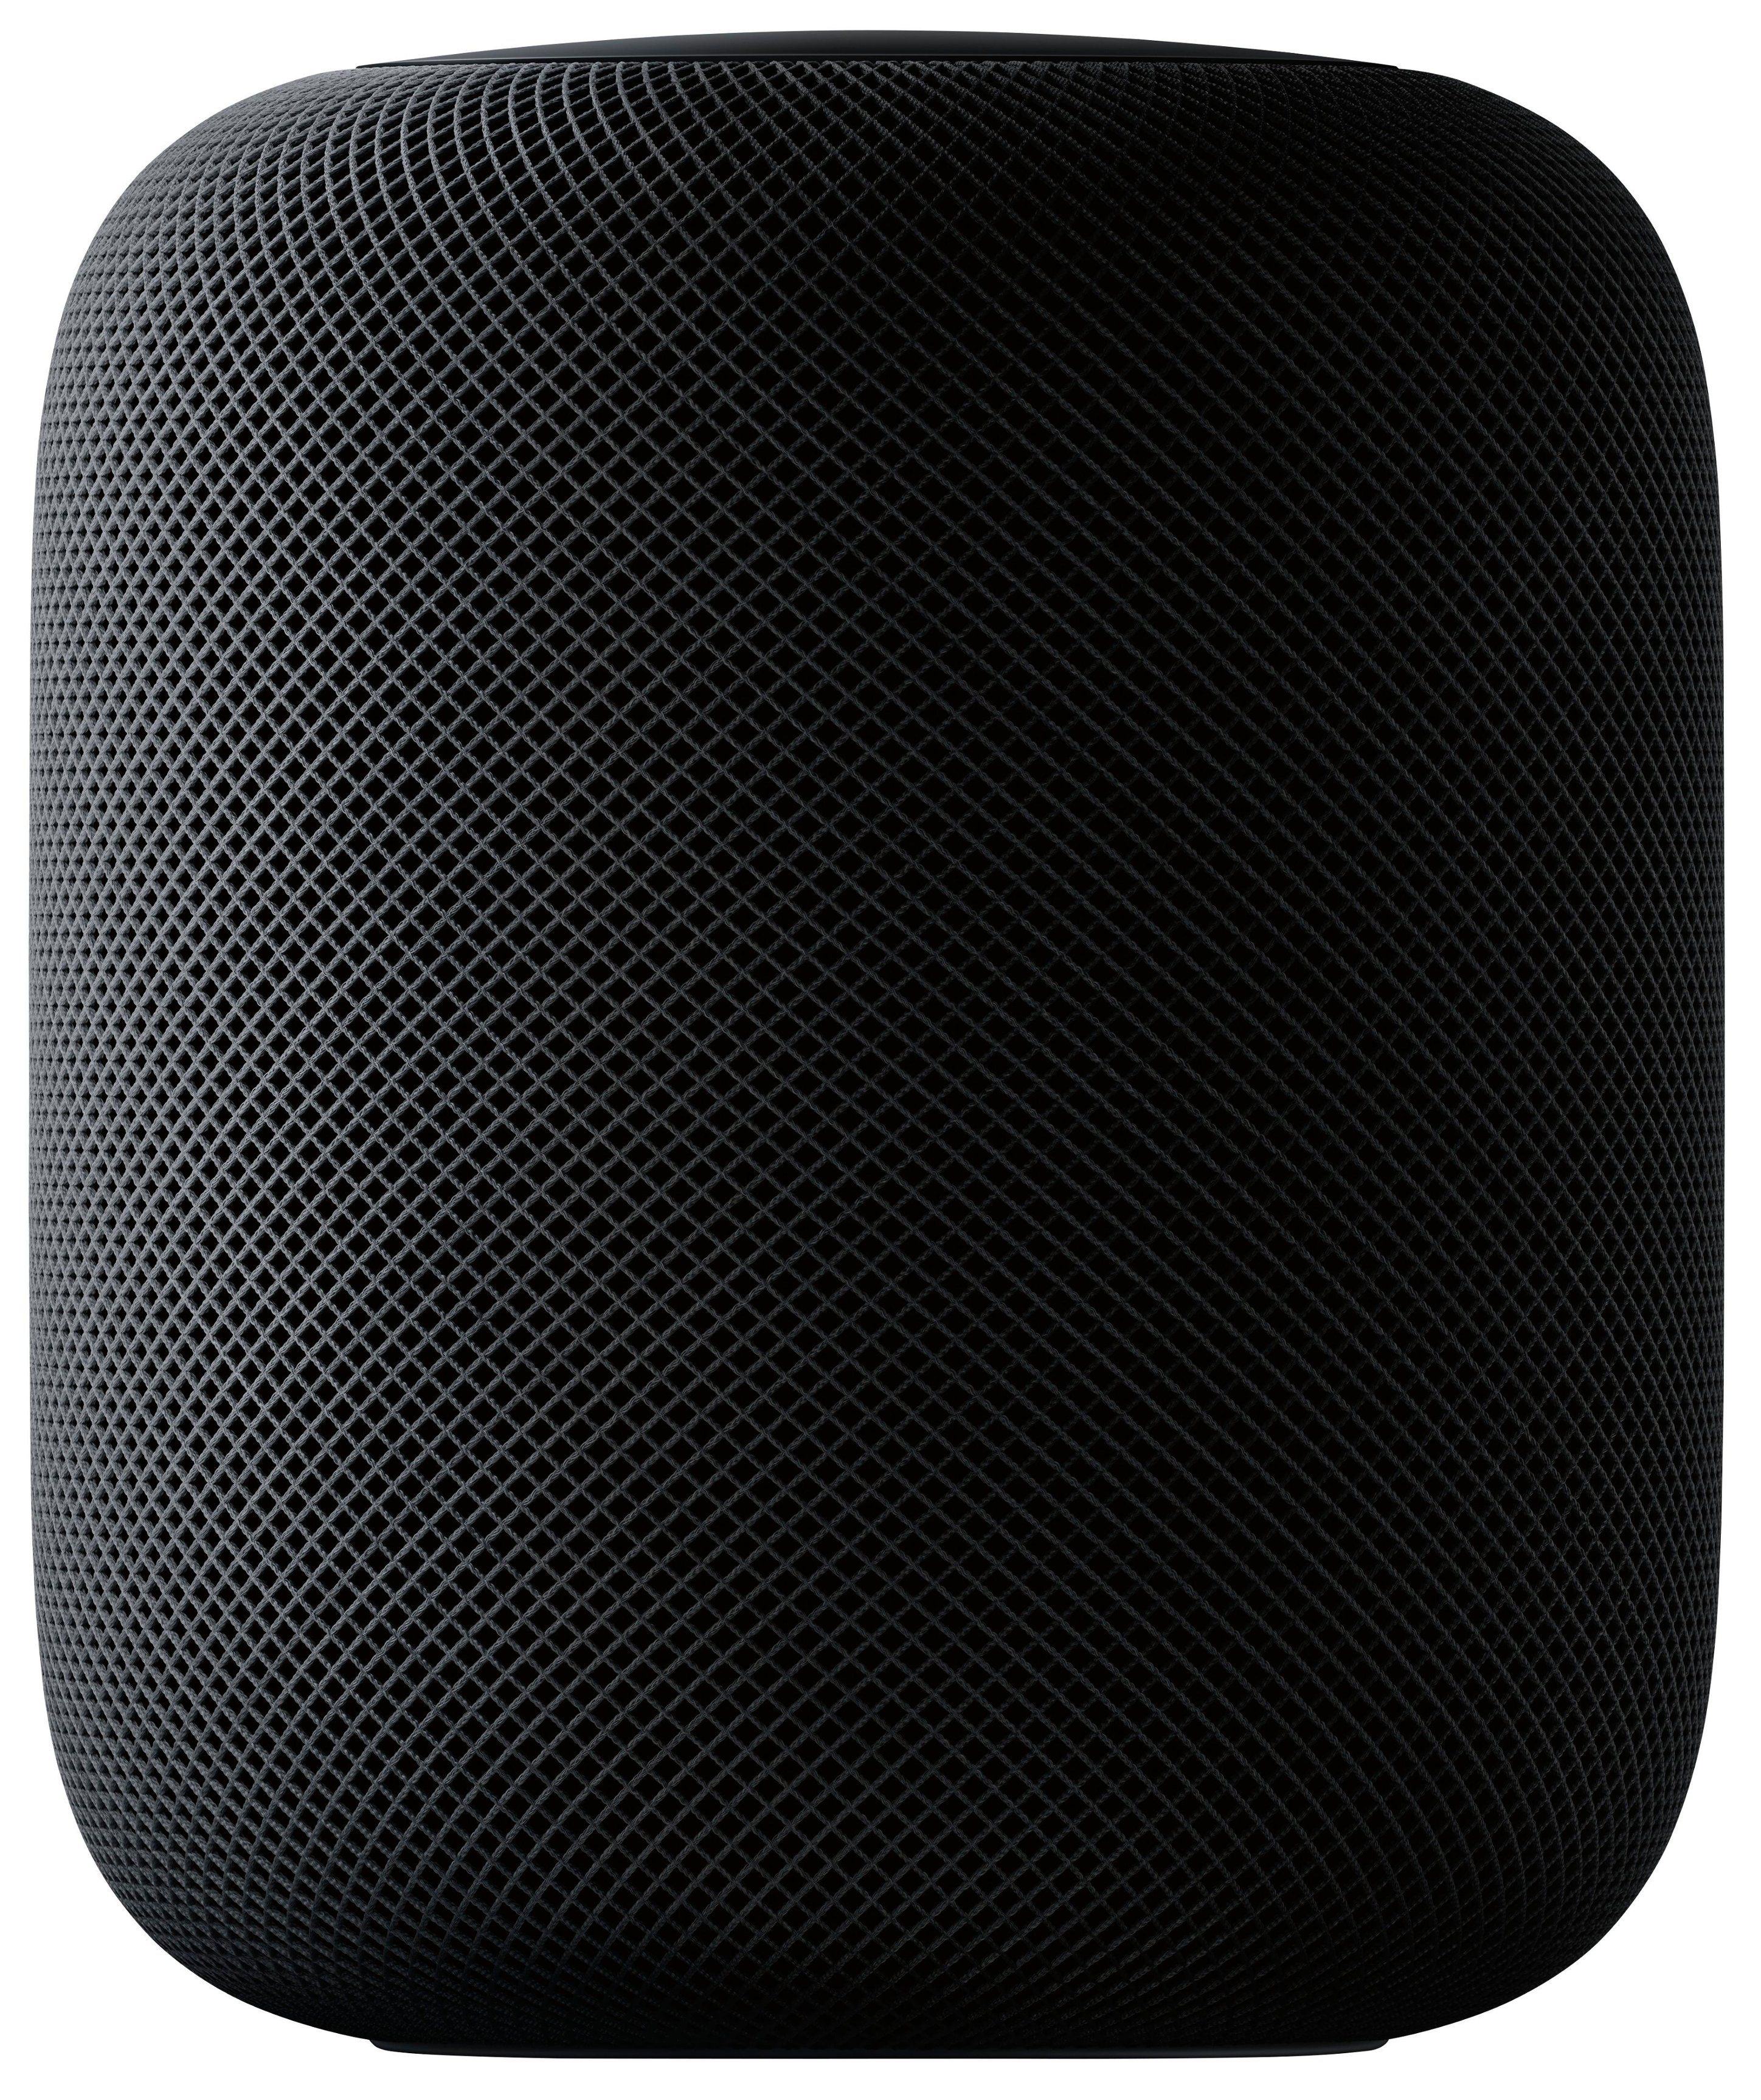 Best Buy: Apple HomePod Space Gray MQHW2LL/A | Best Buy U.S.